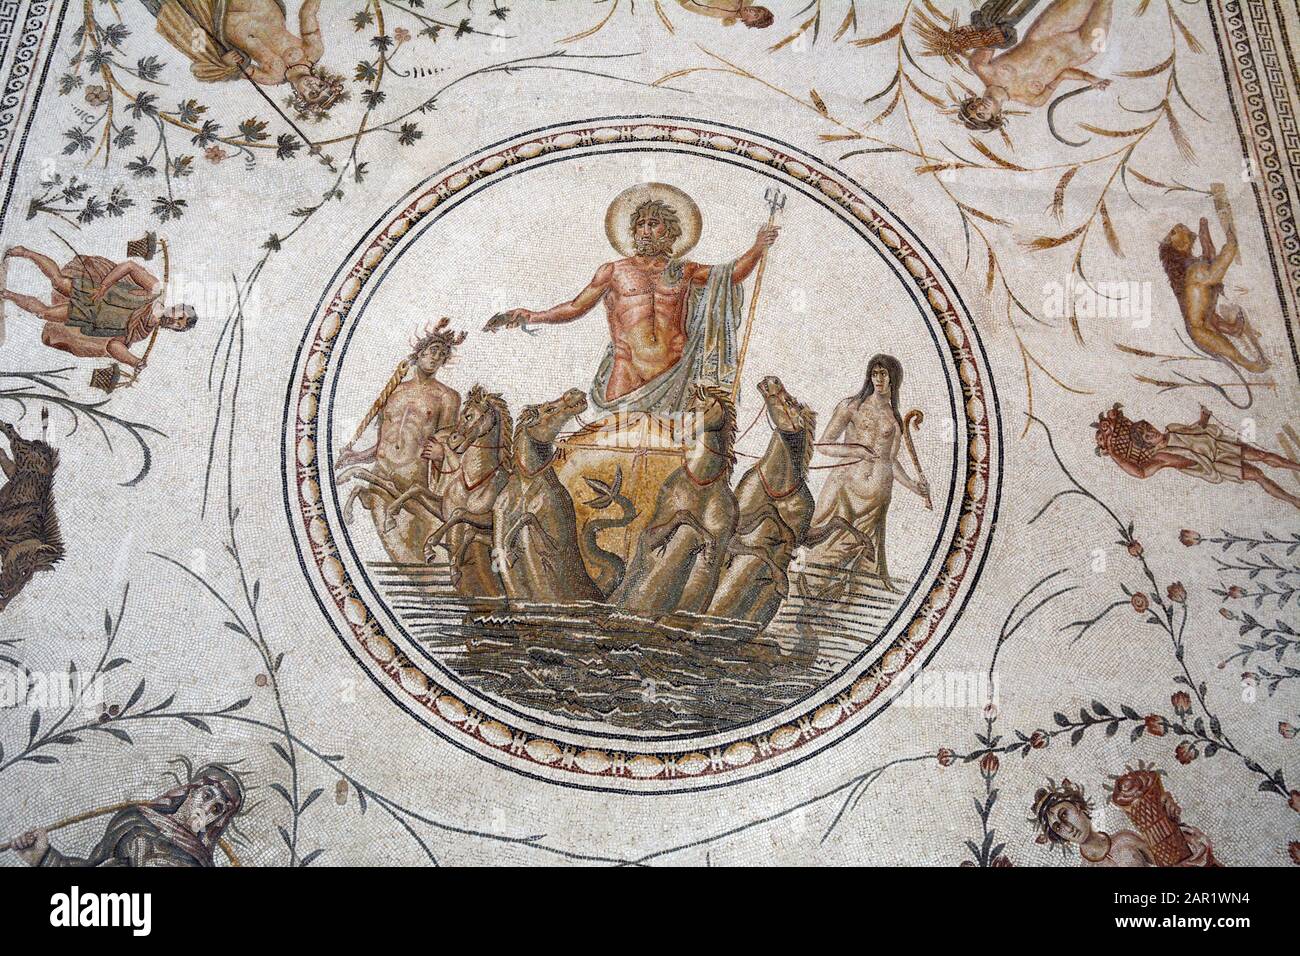 "Der Triumph des Neptun" ein altes römisches Mosaik aus La Chebba, Tunesien, 2. Jahrhundert nach Christus, ausgestellt im Bardo National Museum, Tunis, Tunesia. Stockfoto